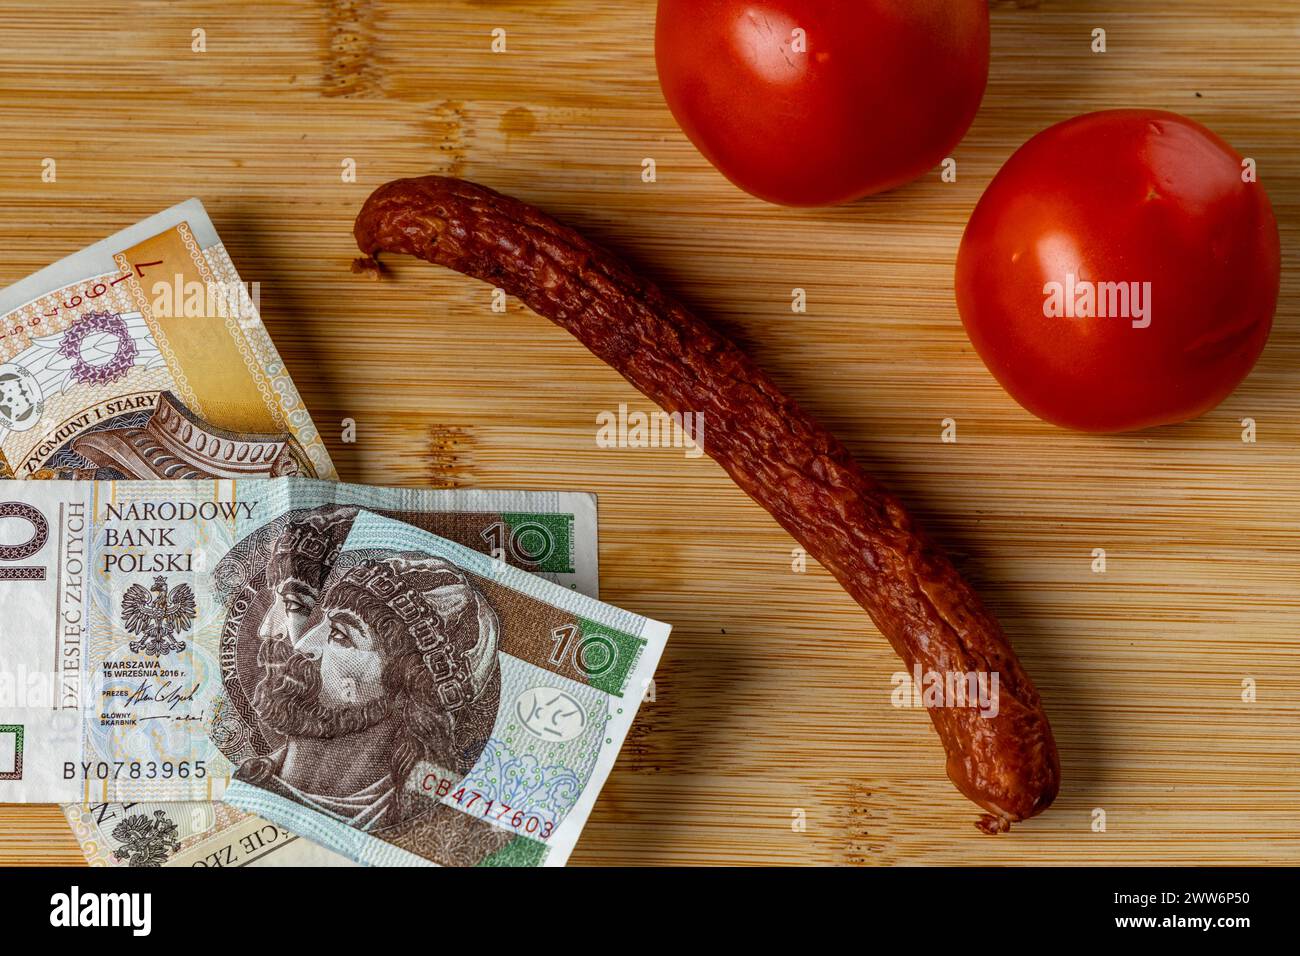 Anstieg der Lebensmittelpreise in Polen, Brot, Butter auf einem Schneidebrett, Tomaten, Wurst, Mehrwertsteuer auf Lebensmittel Polen Geld Stockfoto